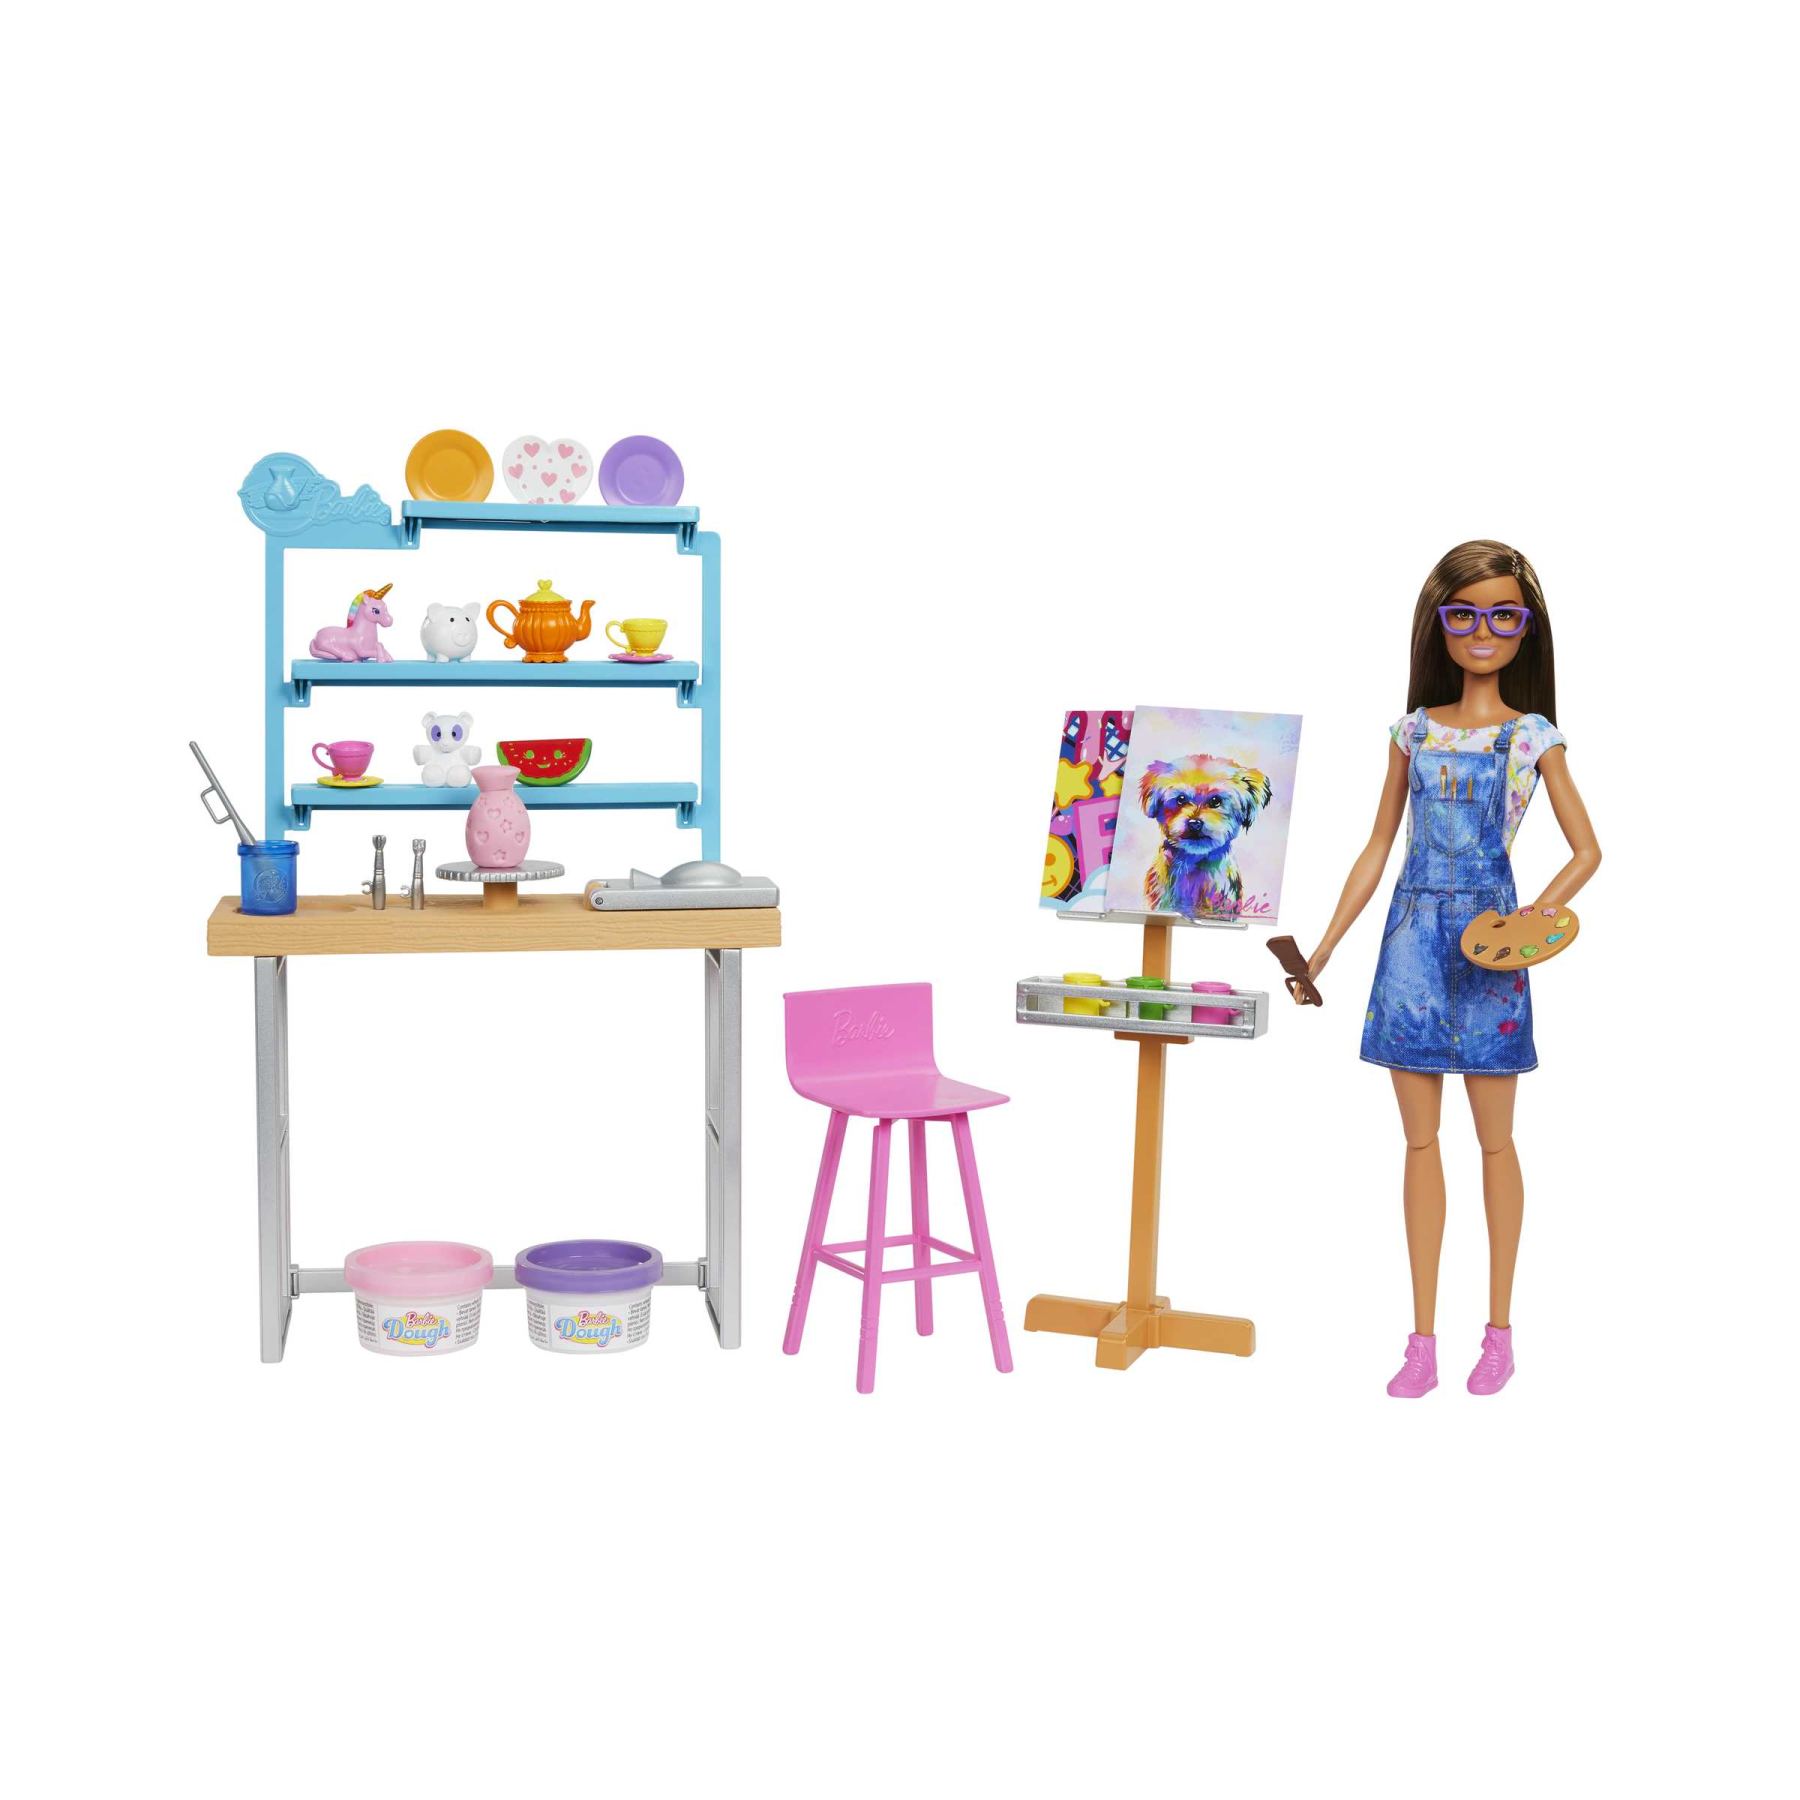 Barbie studio d'arte creatività e relax, bambola barbie, oltre 25 accessori per creare e dipingere, pasta da modellare, stampi, tele e altro ancora, giocattolo per bambini dai 3 ai 7 anni - Barbie